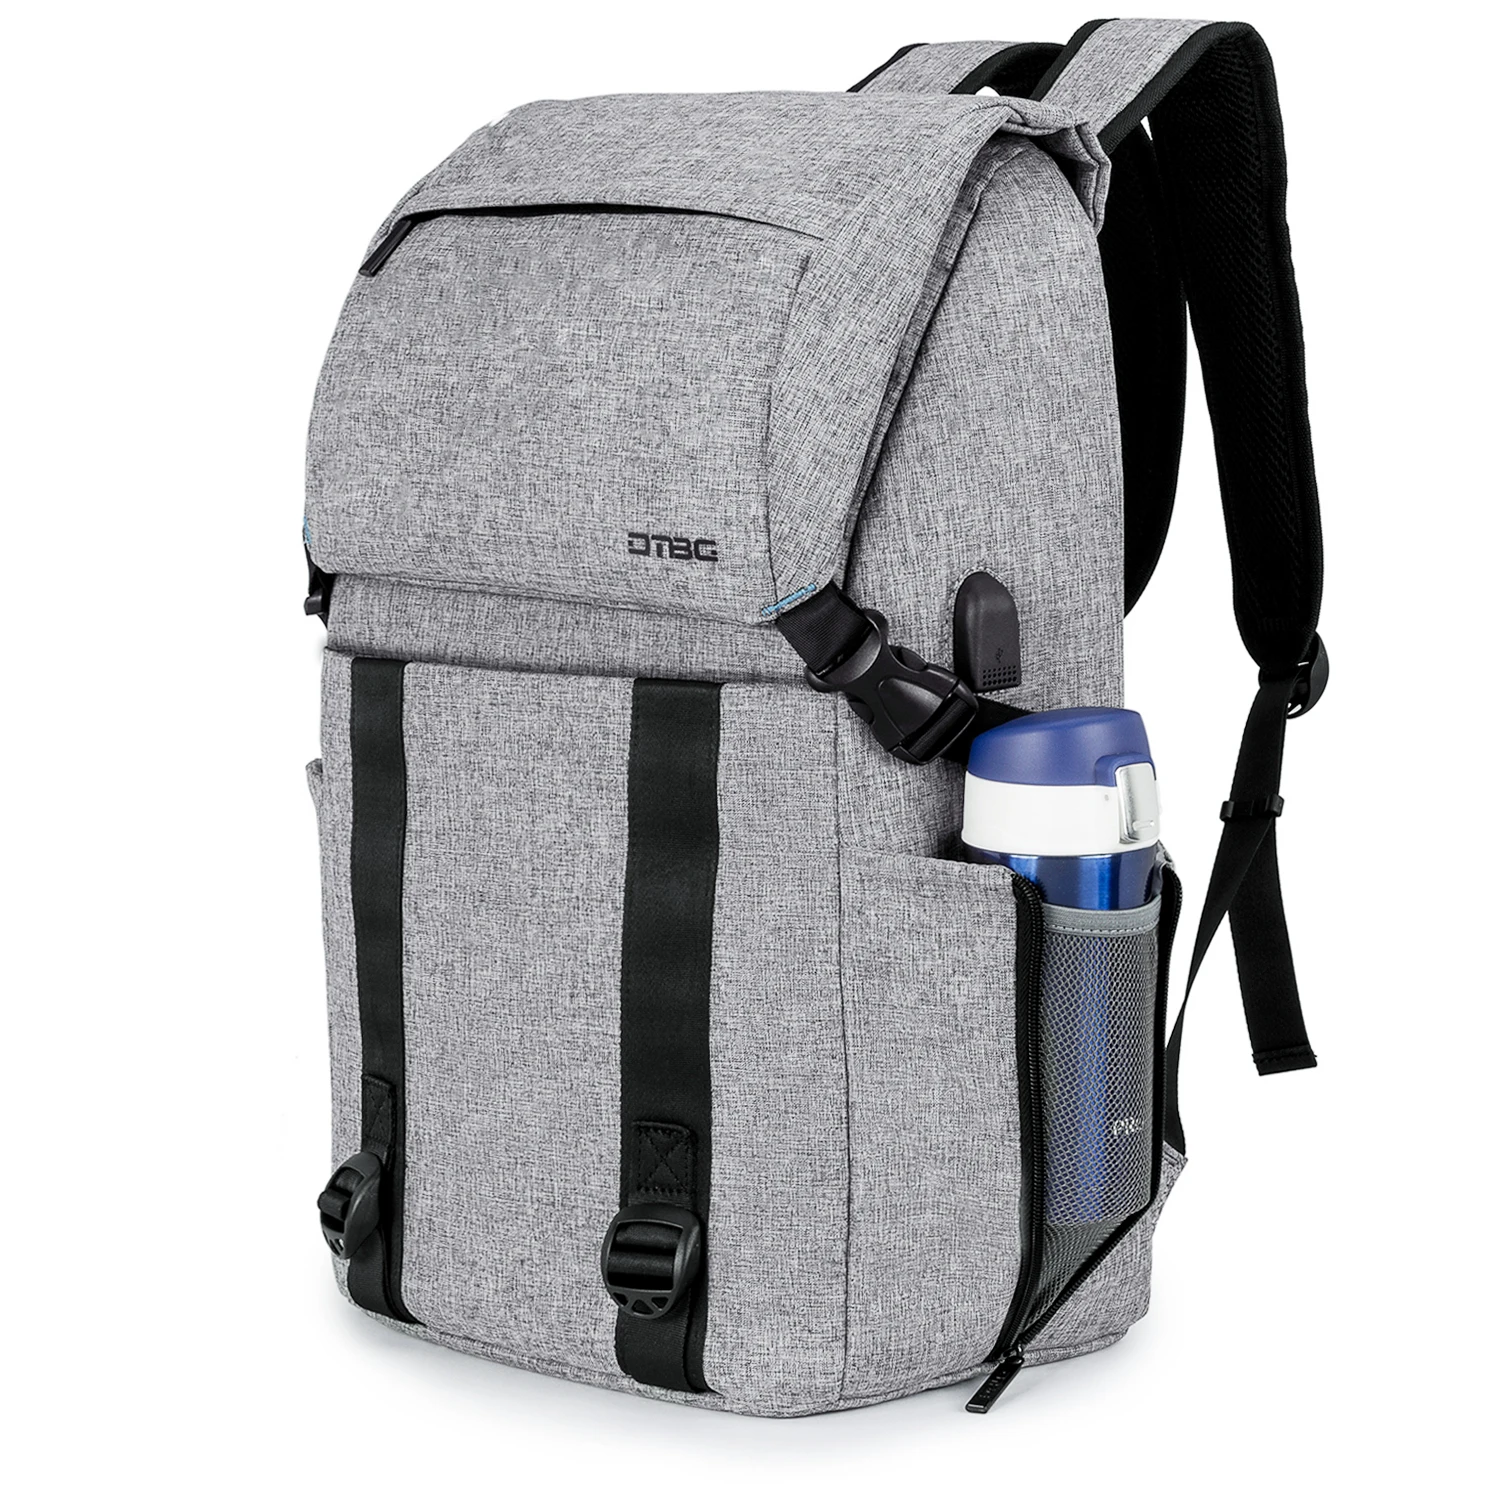 Деловой рюкзак для ноутбука 17,3 дюйма, походный дорожный рюкзак, тонкий школьный рюкзак, водонепроницаемый повседневный рюкзак, рюкзак, рюкз...